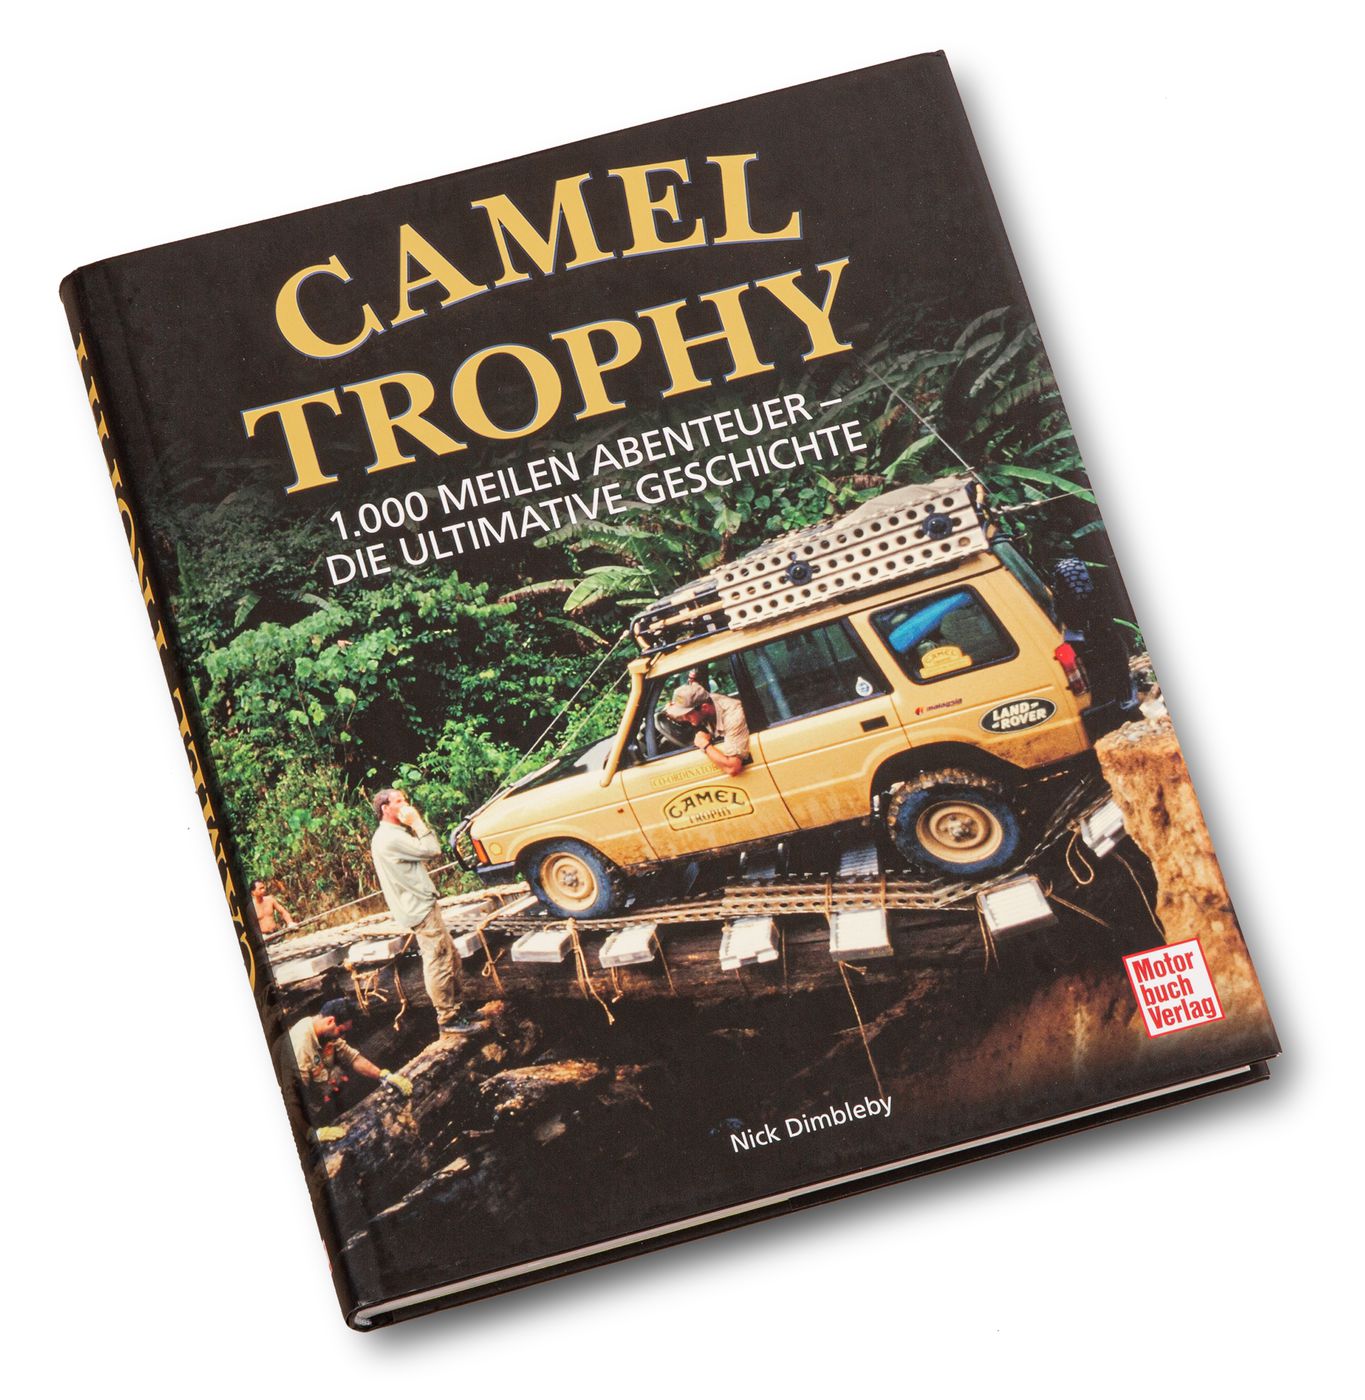 Camel Trophy
Camel Trophy
Camel Trophy